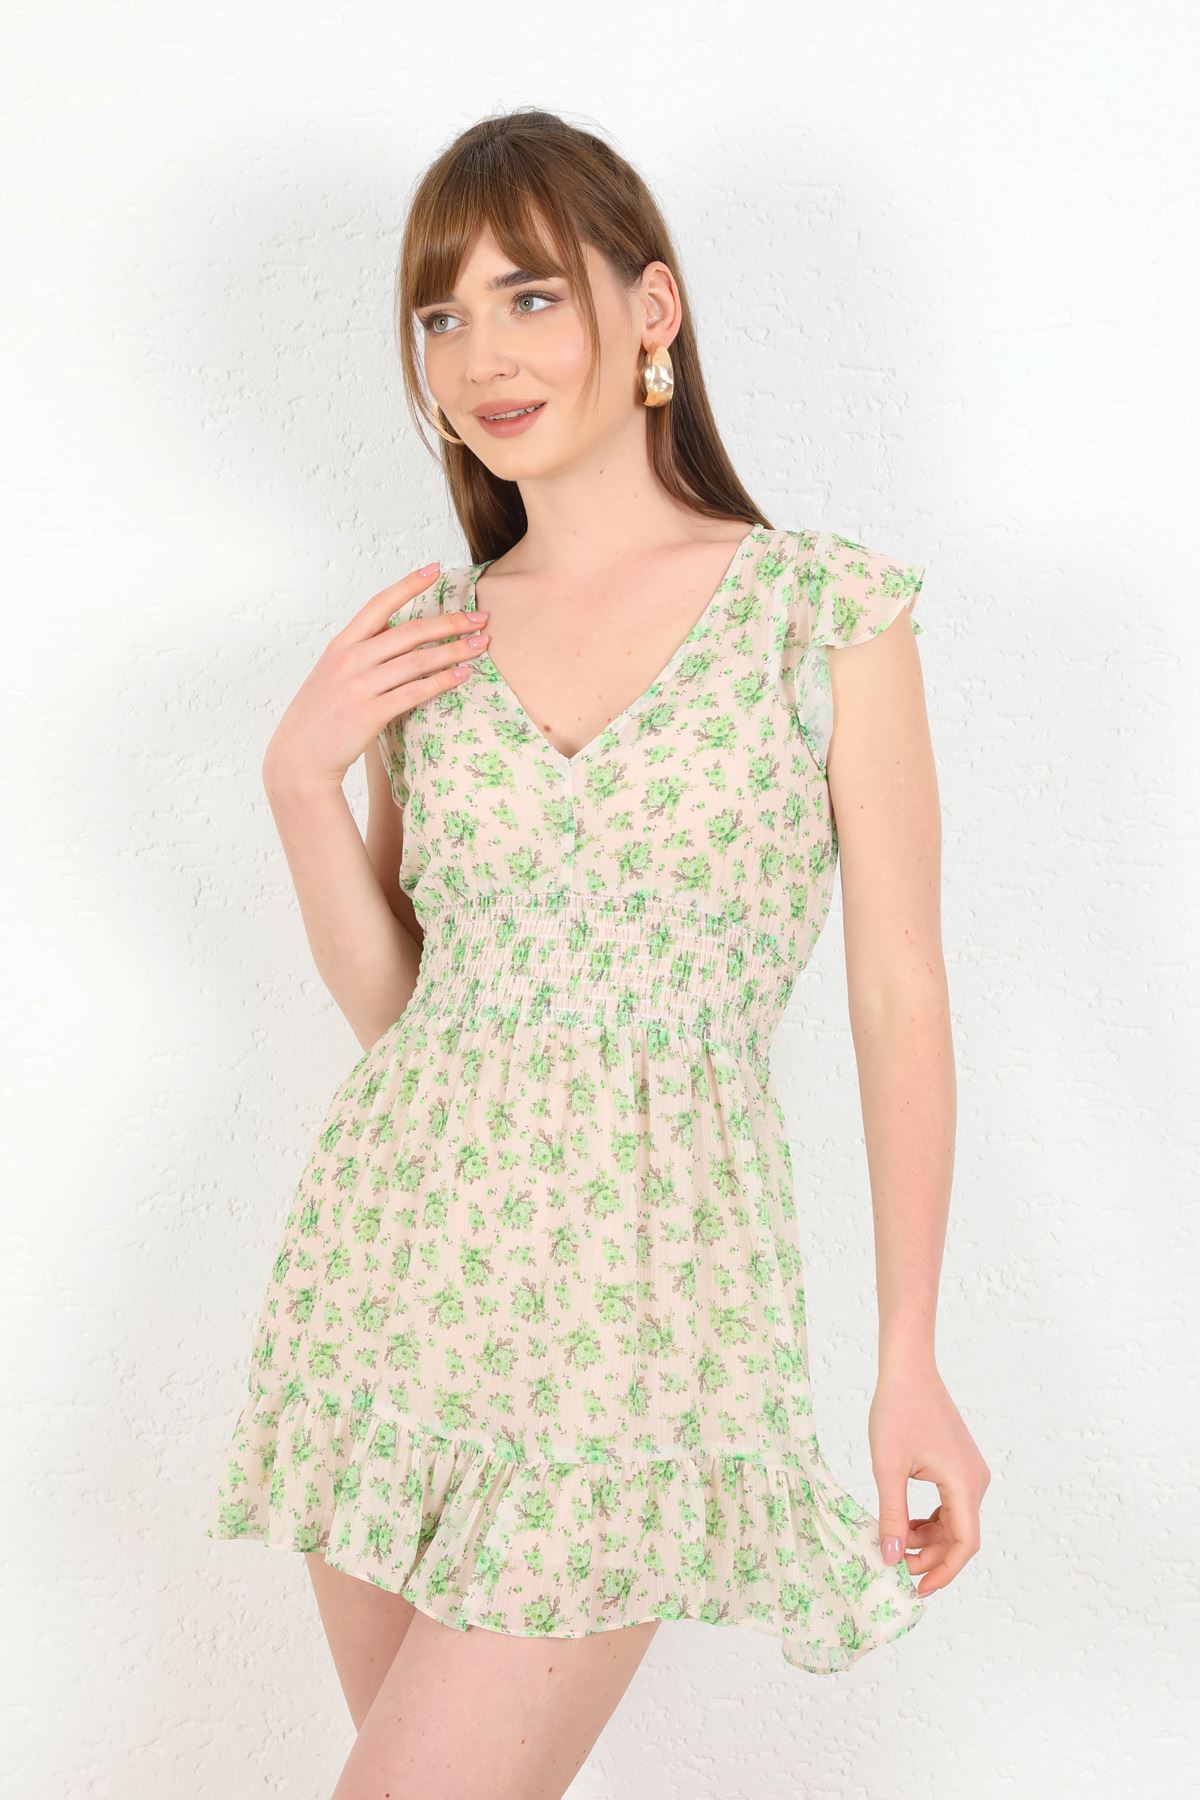 Chiffon Fabric Short Women Dress-Green